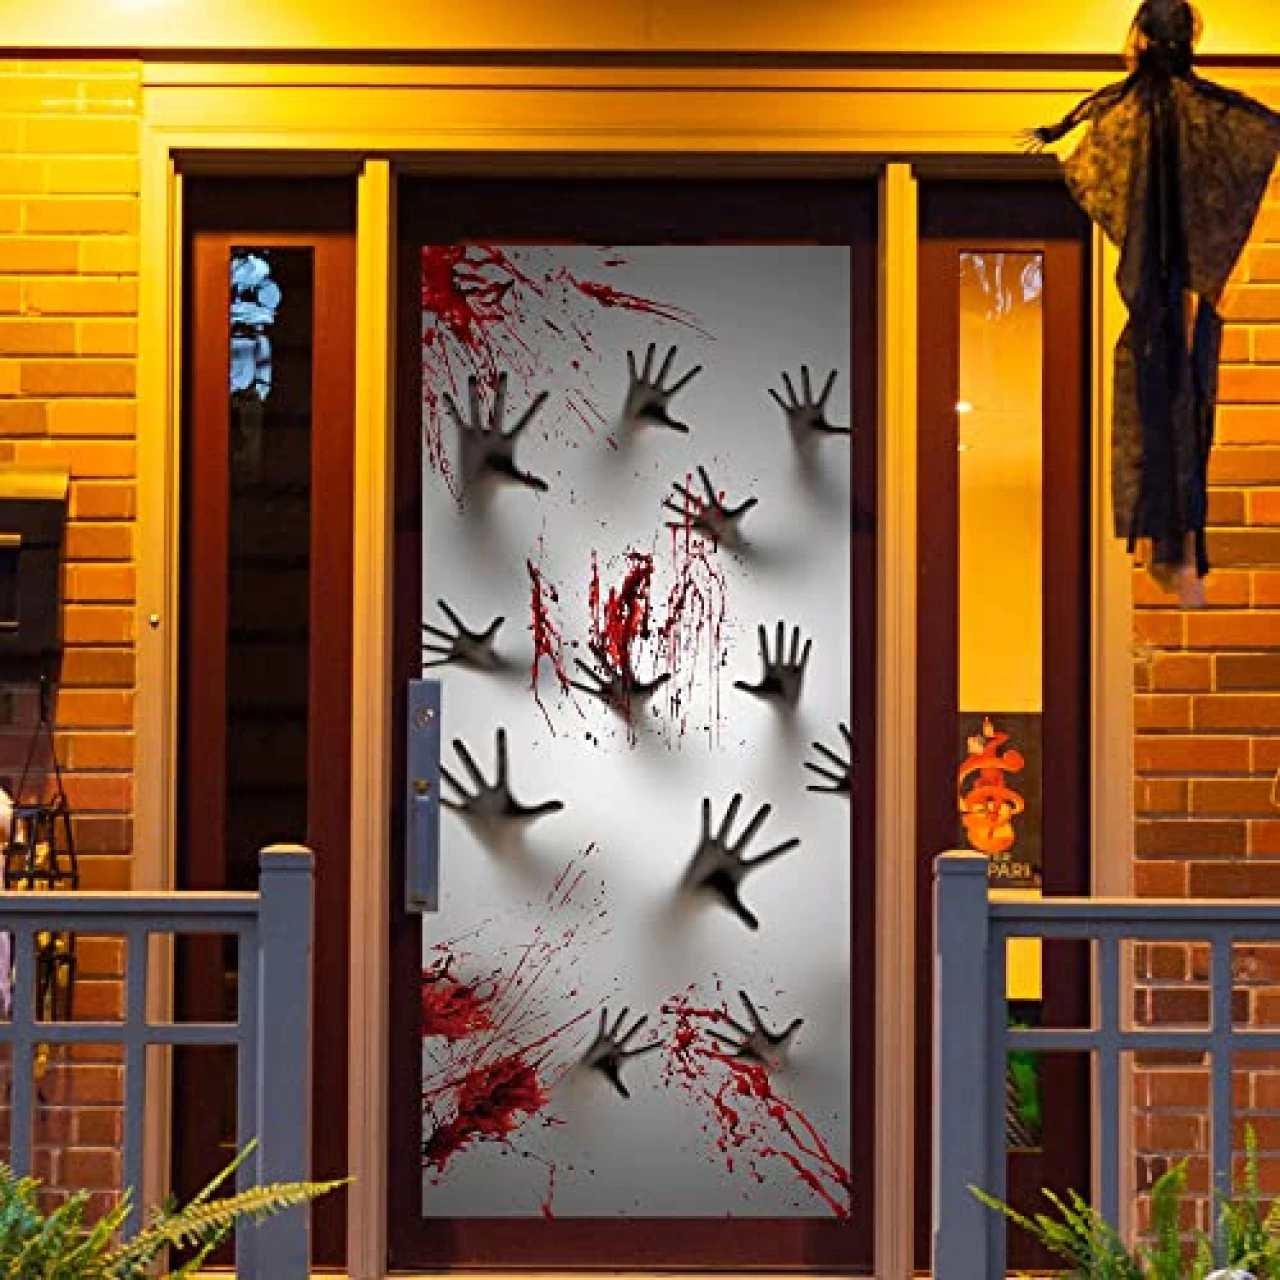 JOYIN 3 PCS Halloween Haunted House Decoration Window Door Cover Zombie Hands